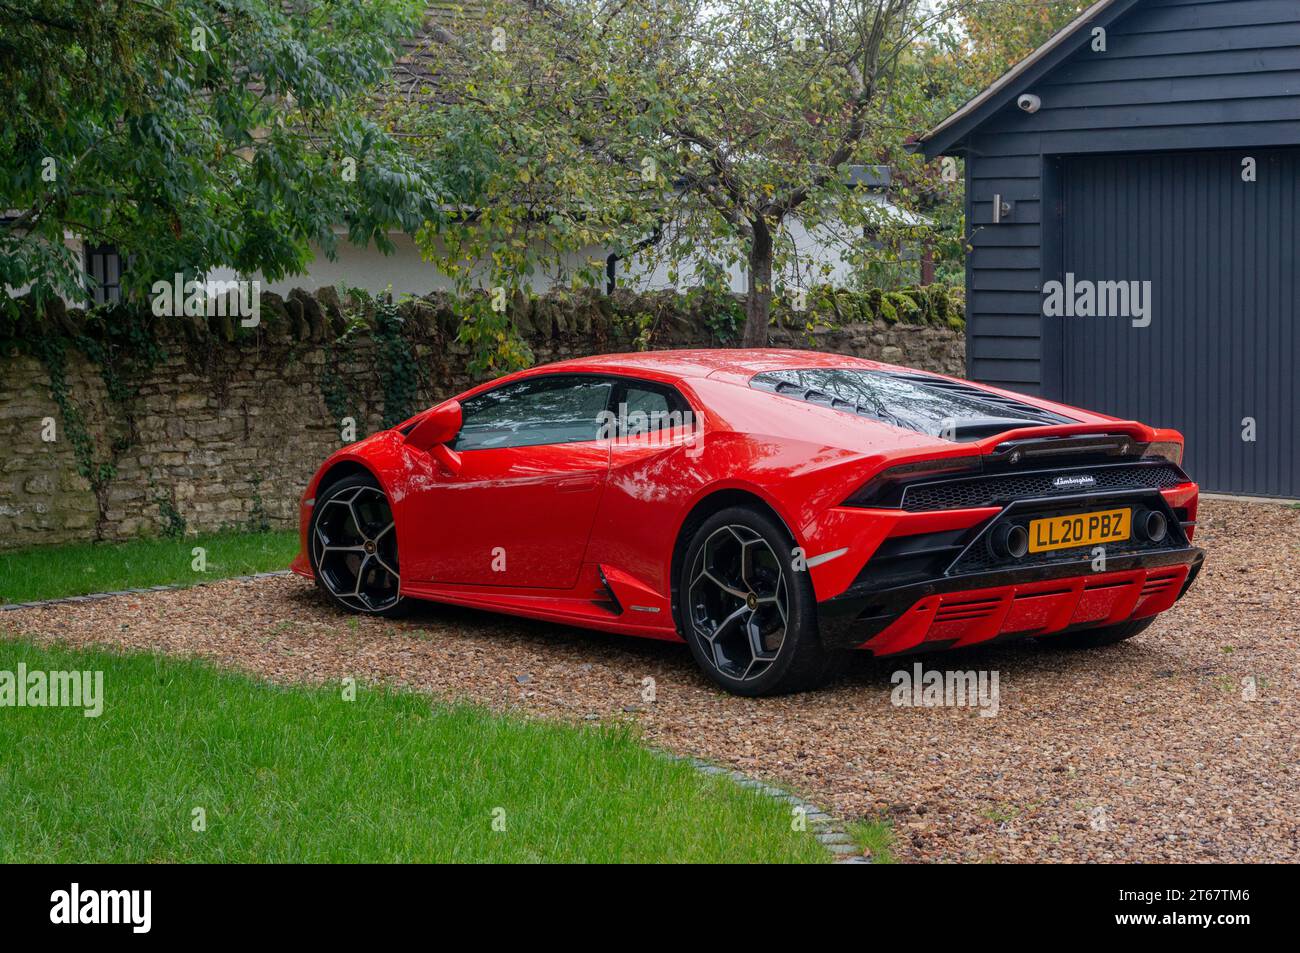 Voiture de sport rouge Lamborghini garée dans la conduite d'une maison dans le village de Biddenham, Bedfordshire, Royaume-Uni Banque D'Images